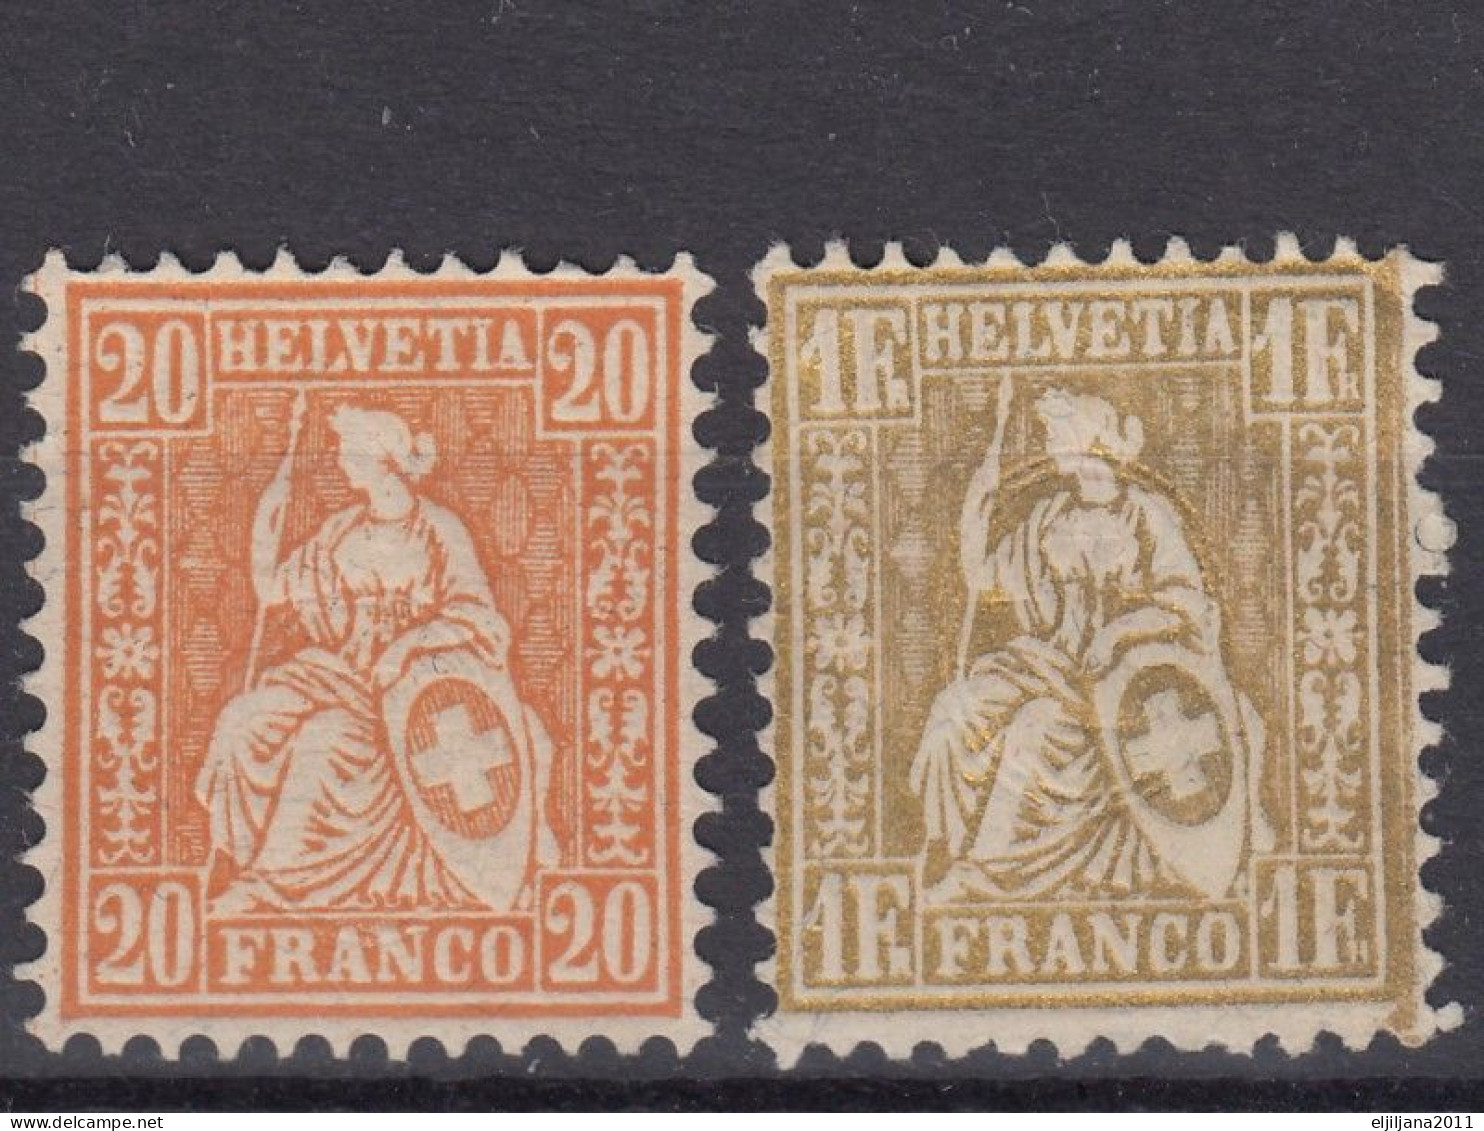 ⁕ Switzerland - SVIZZERA - SUISSE 1862 - 1881 ⁕ SEATED HELVETIA 20 C. & 1 Fr. Franco ⁕ 2v Unused - No Gum - Unused Stamps